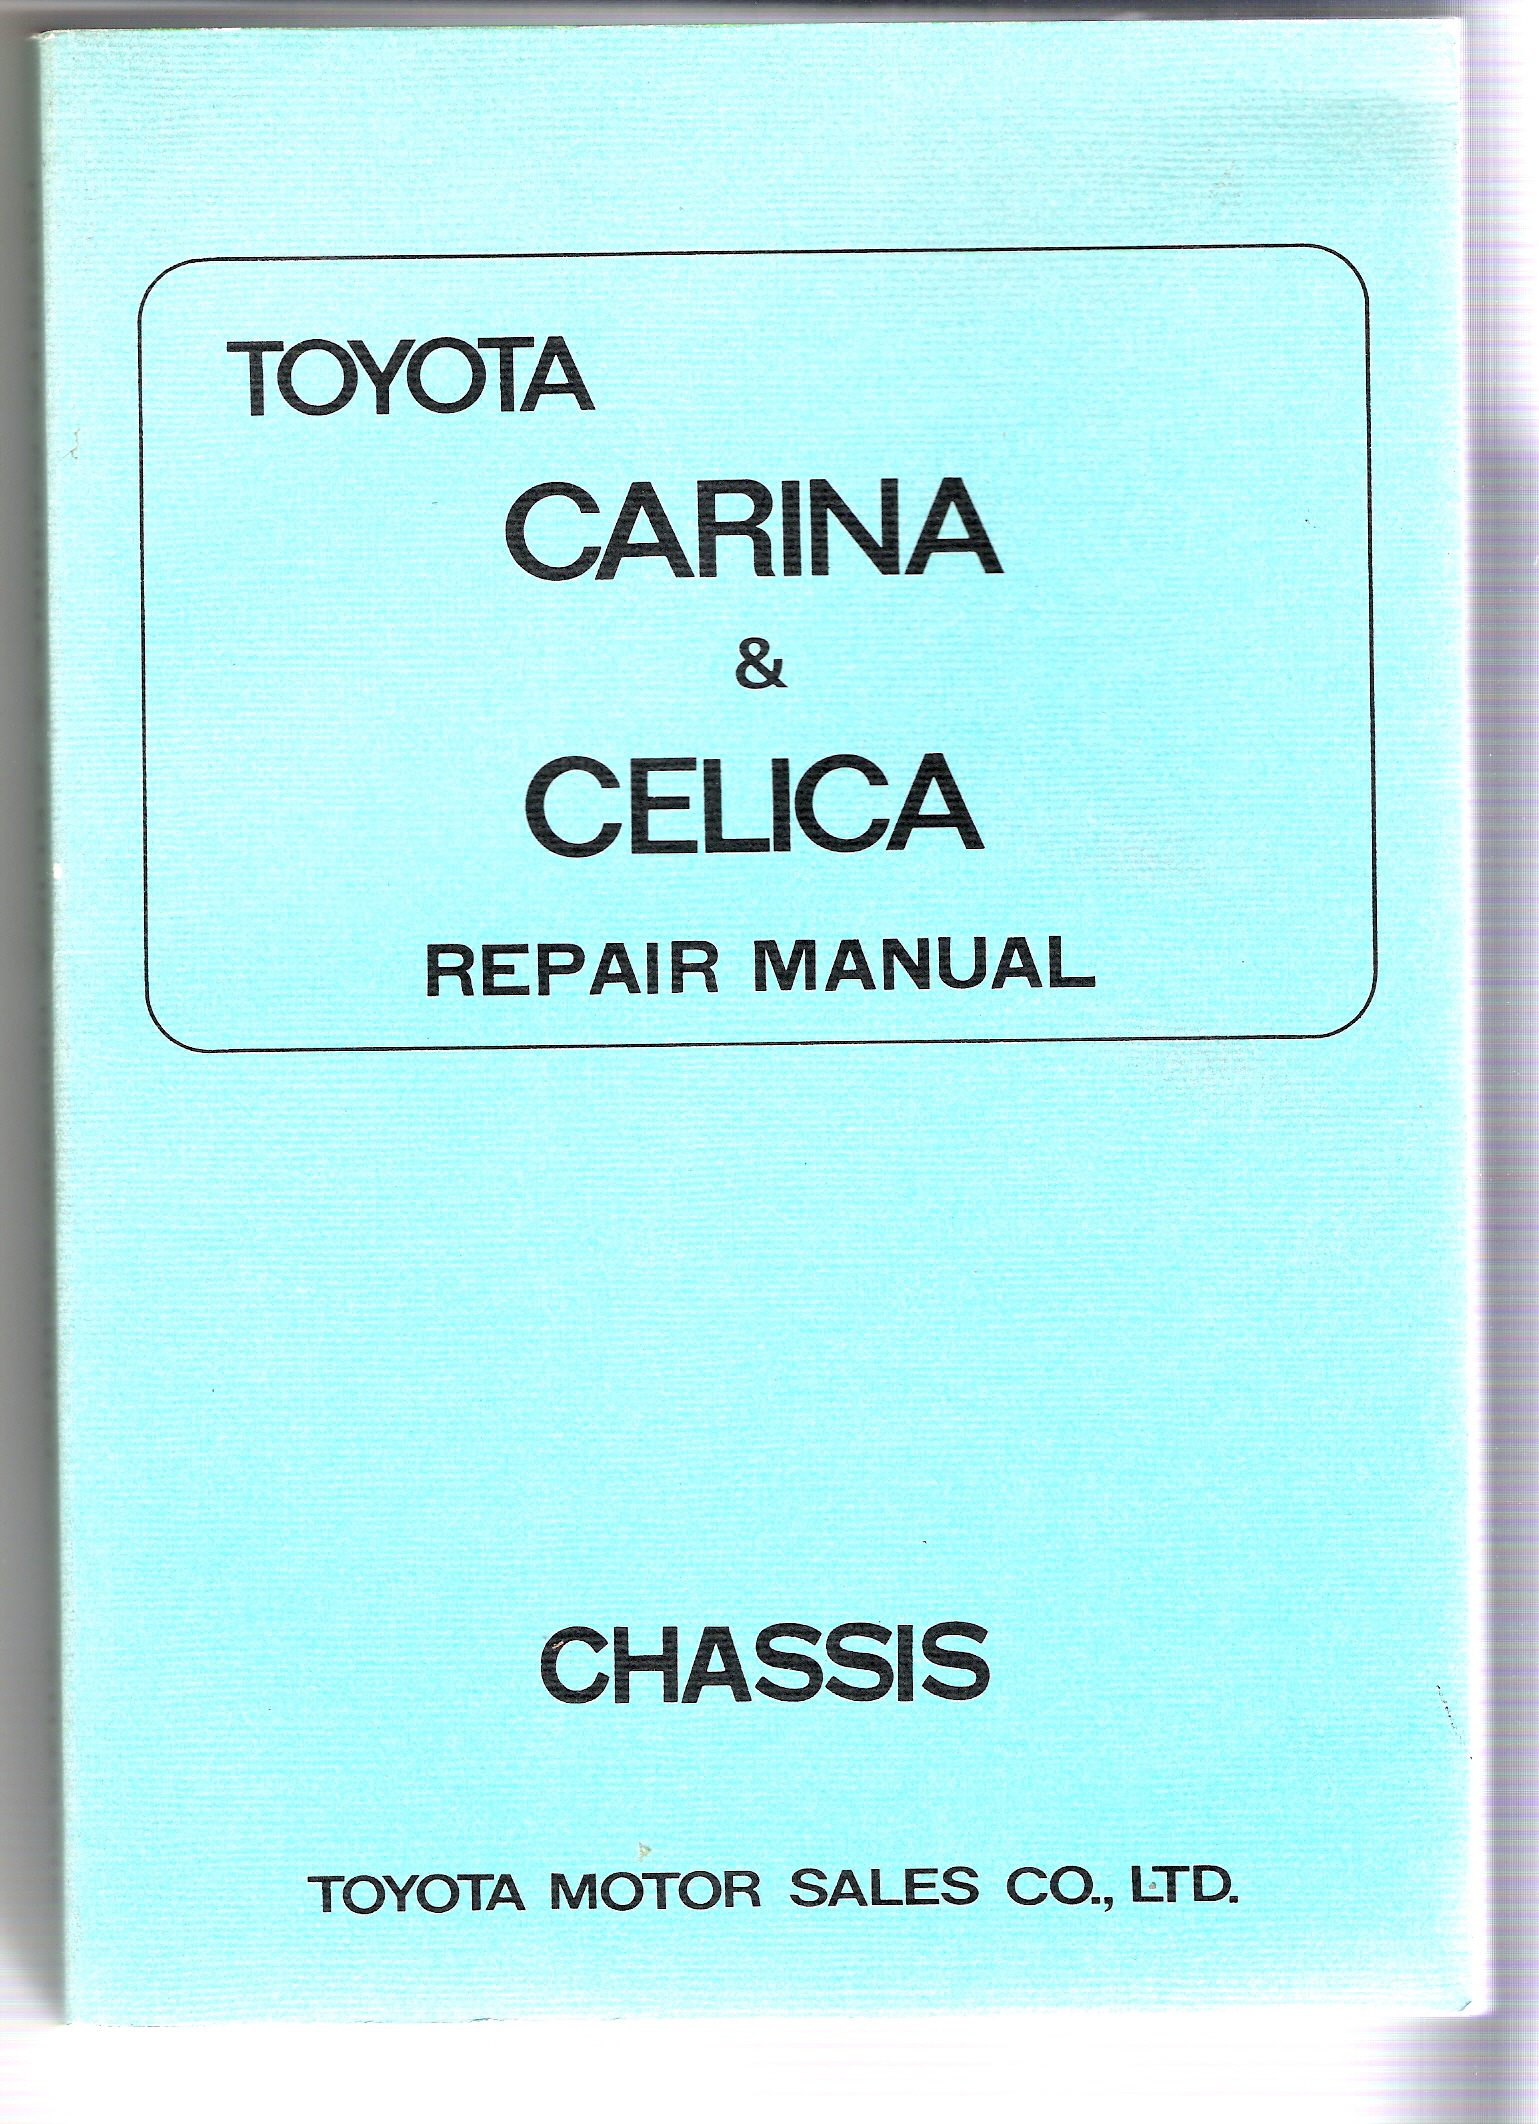 Original Toyota Celica Factory